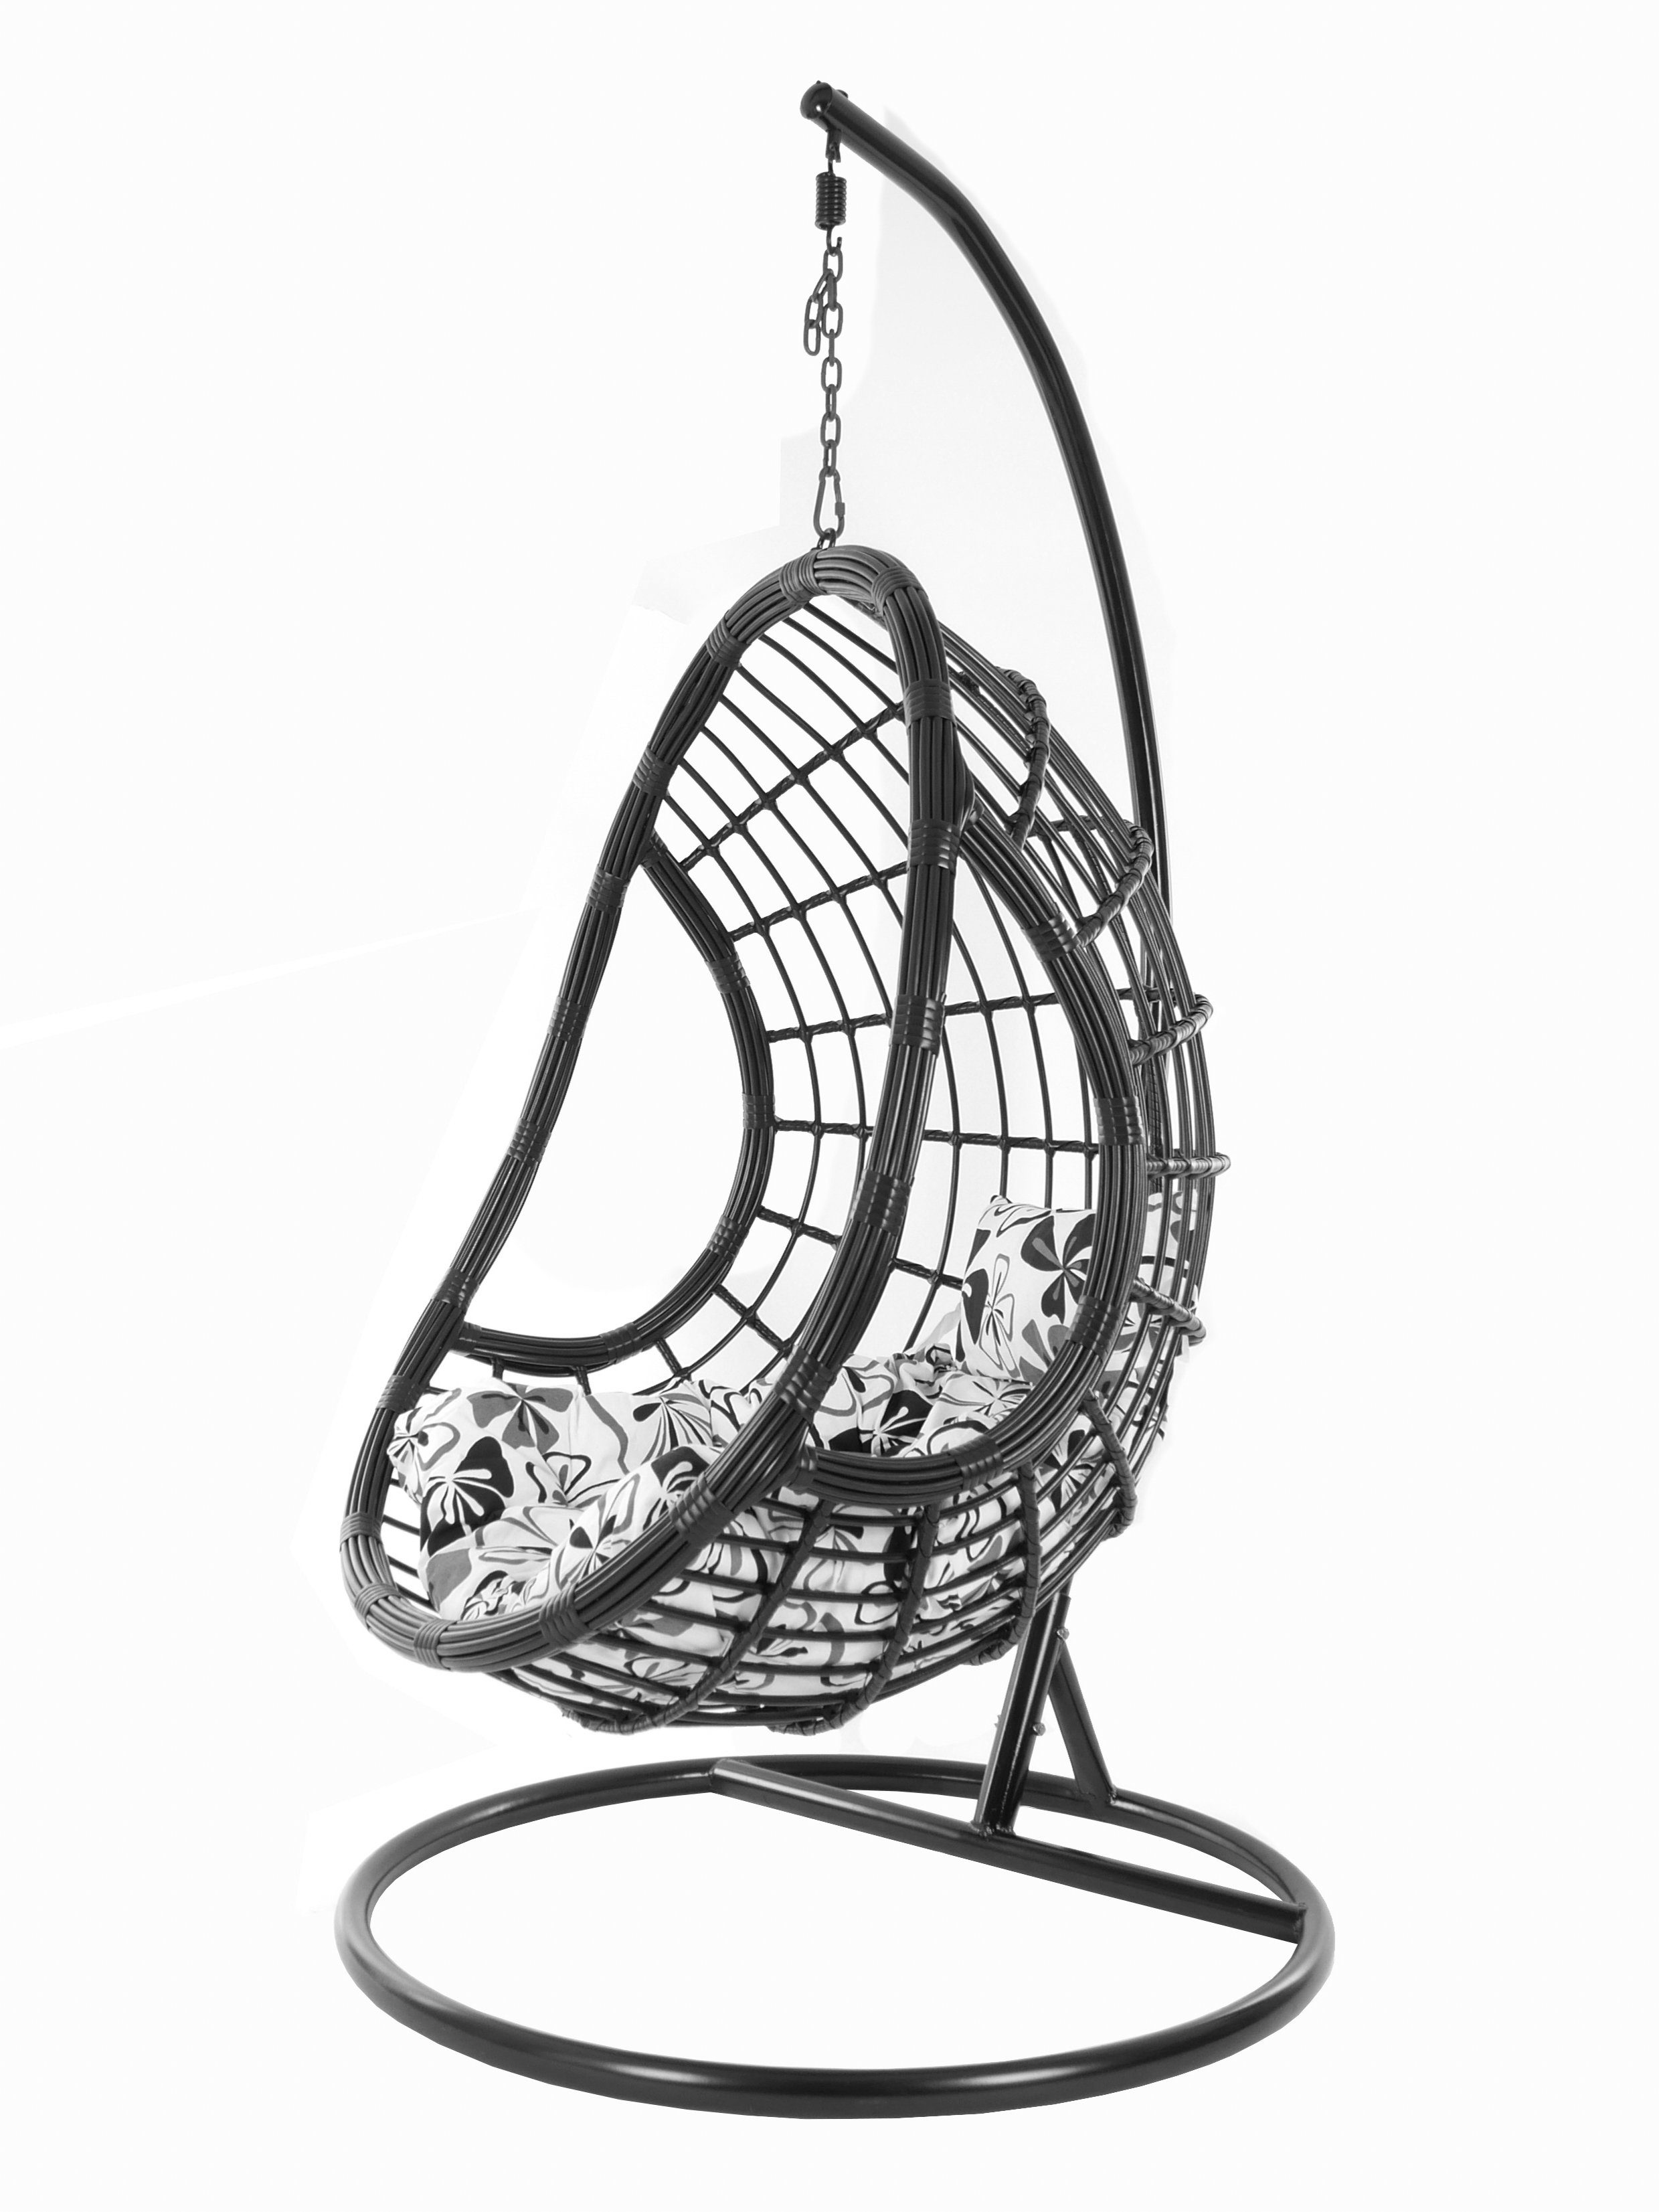 Hängesessel mit Gestell Schwebesessel, flower Chair, KIDEO edles love) (9800 Hängesessel schwarz, Design und blumenmuster fossil Kissen, Swing grau black, PALMANOVA Loungemöbel,